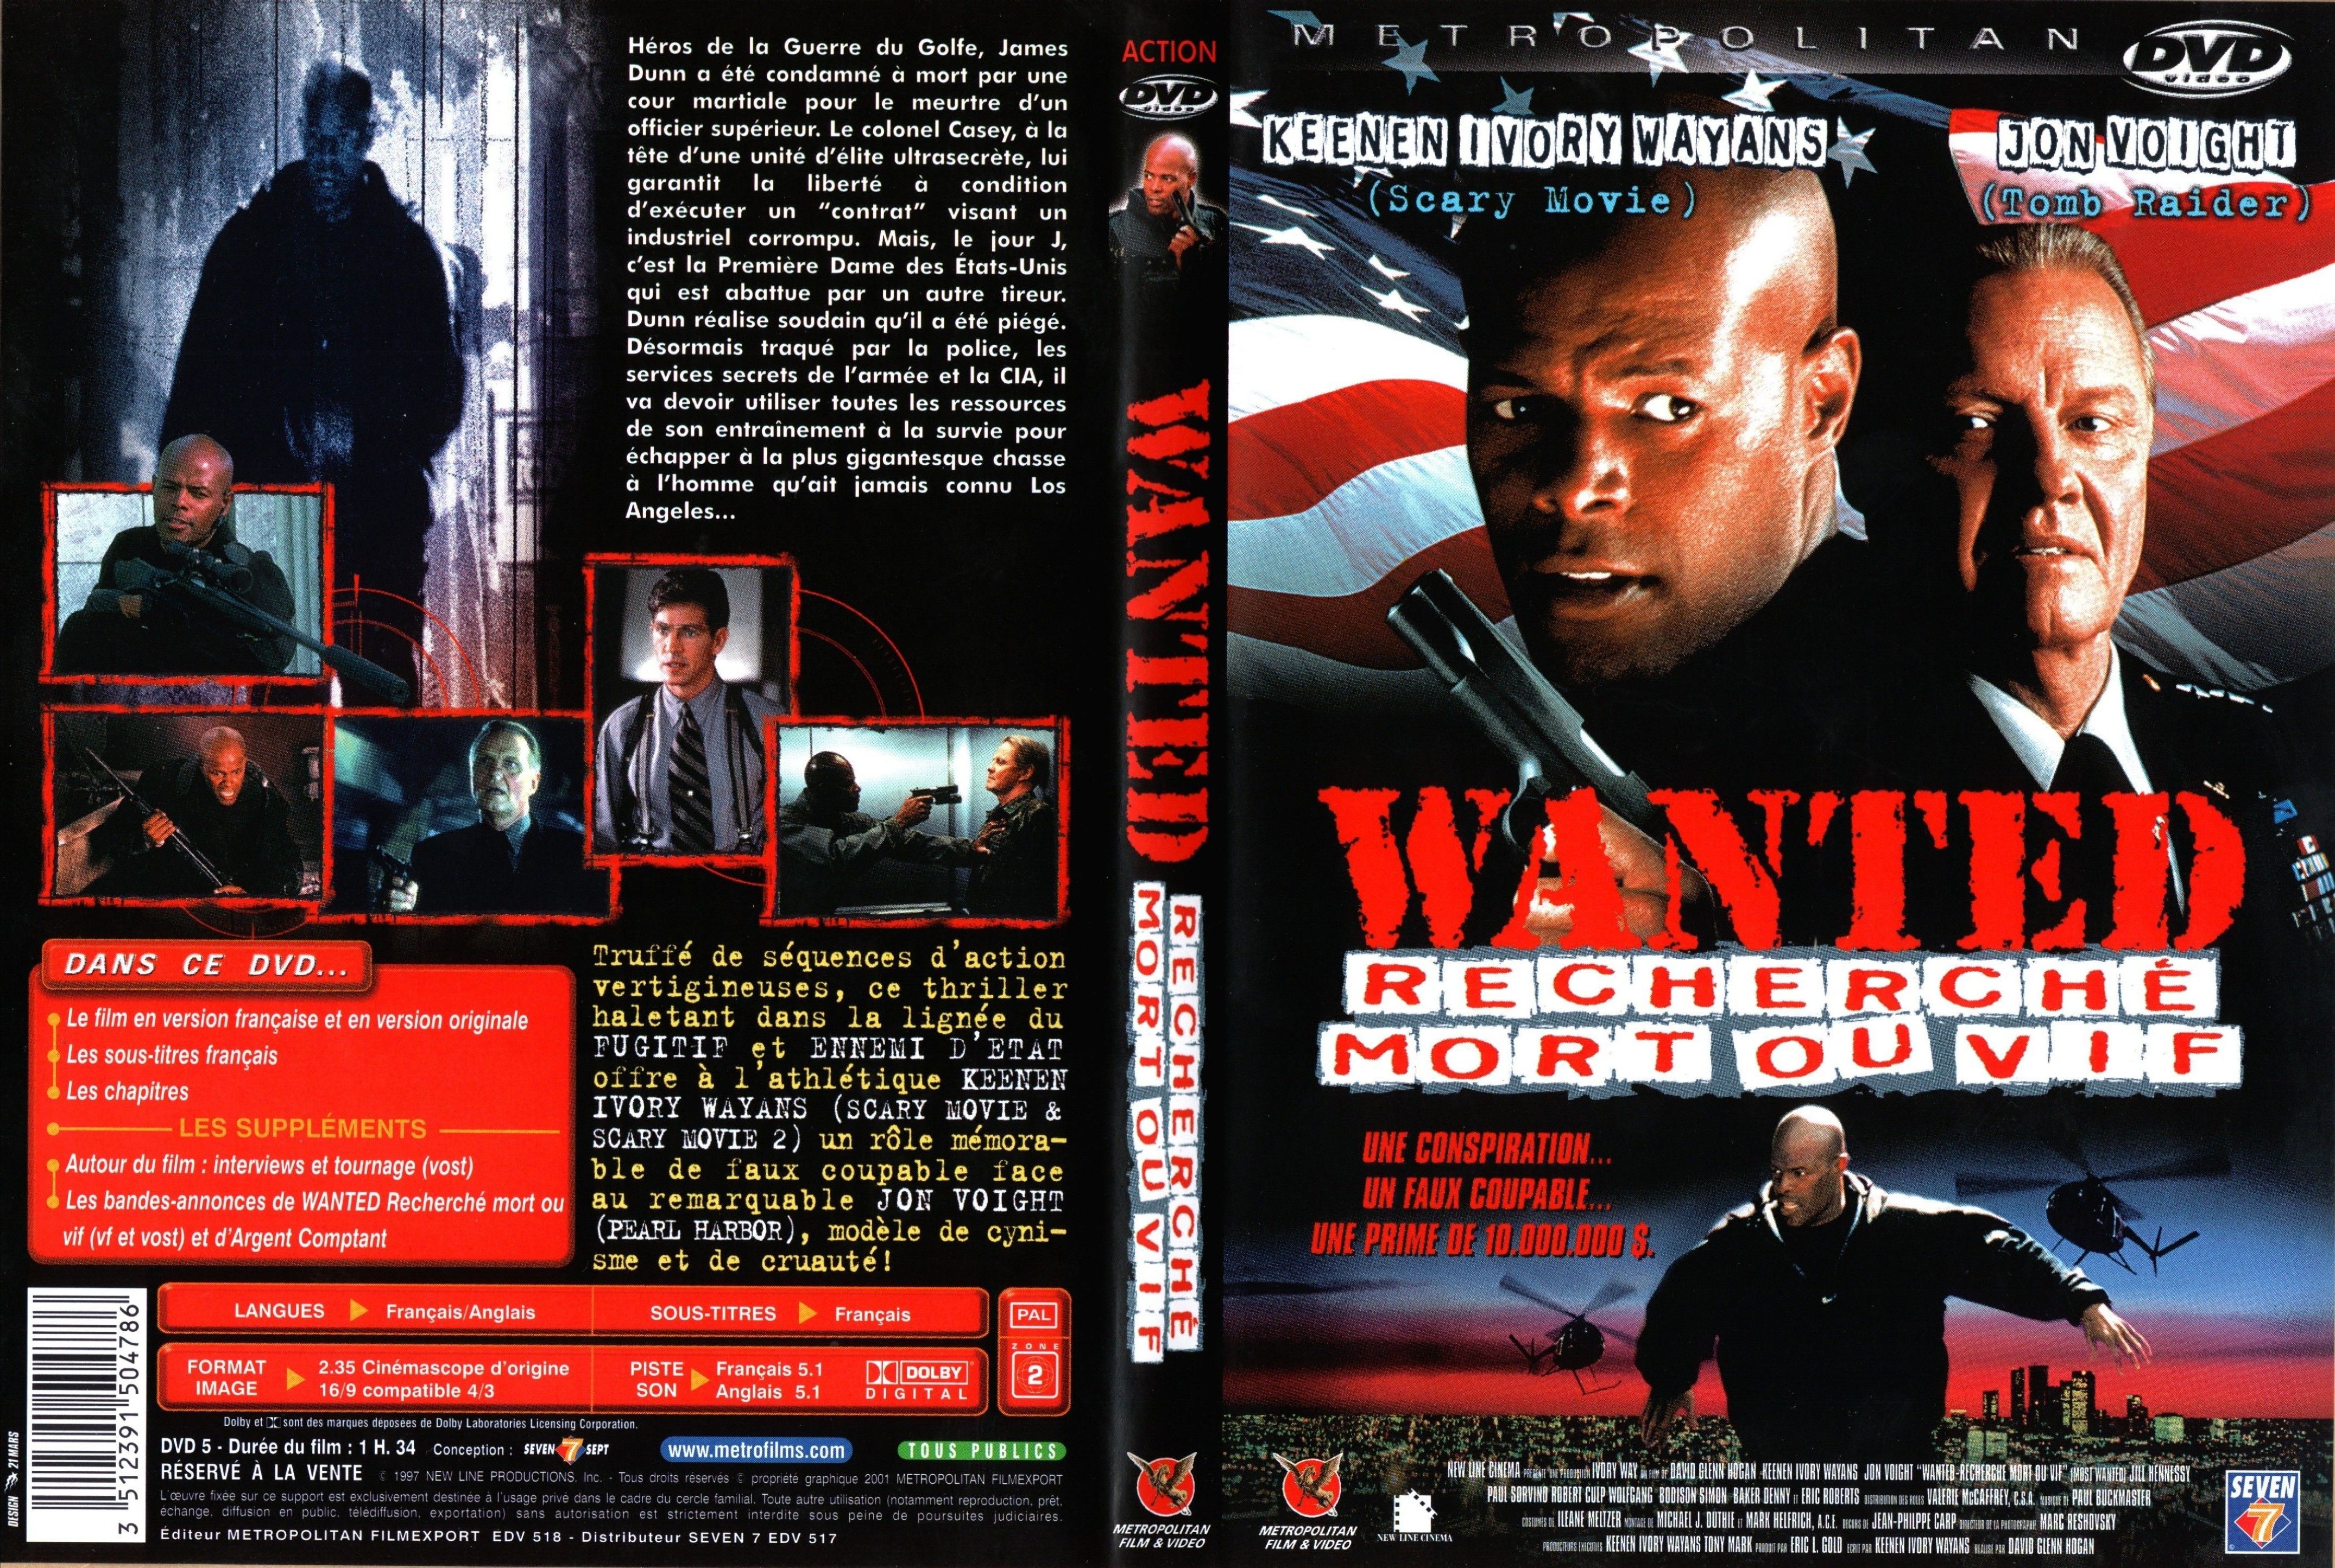 Jaquette DVD Wanted recherch mort ou vif